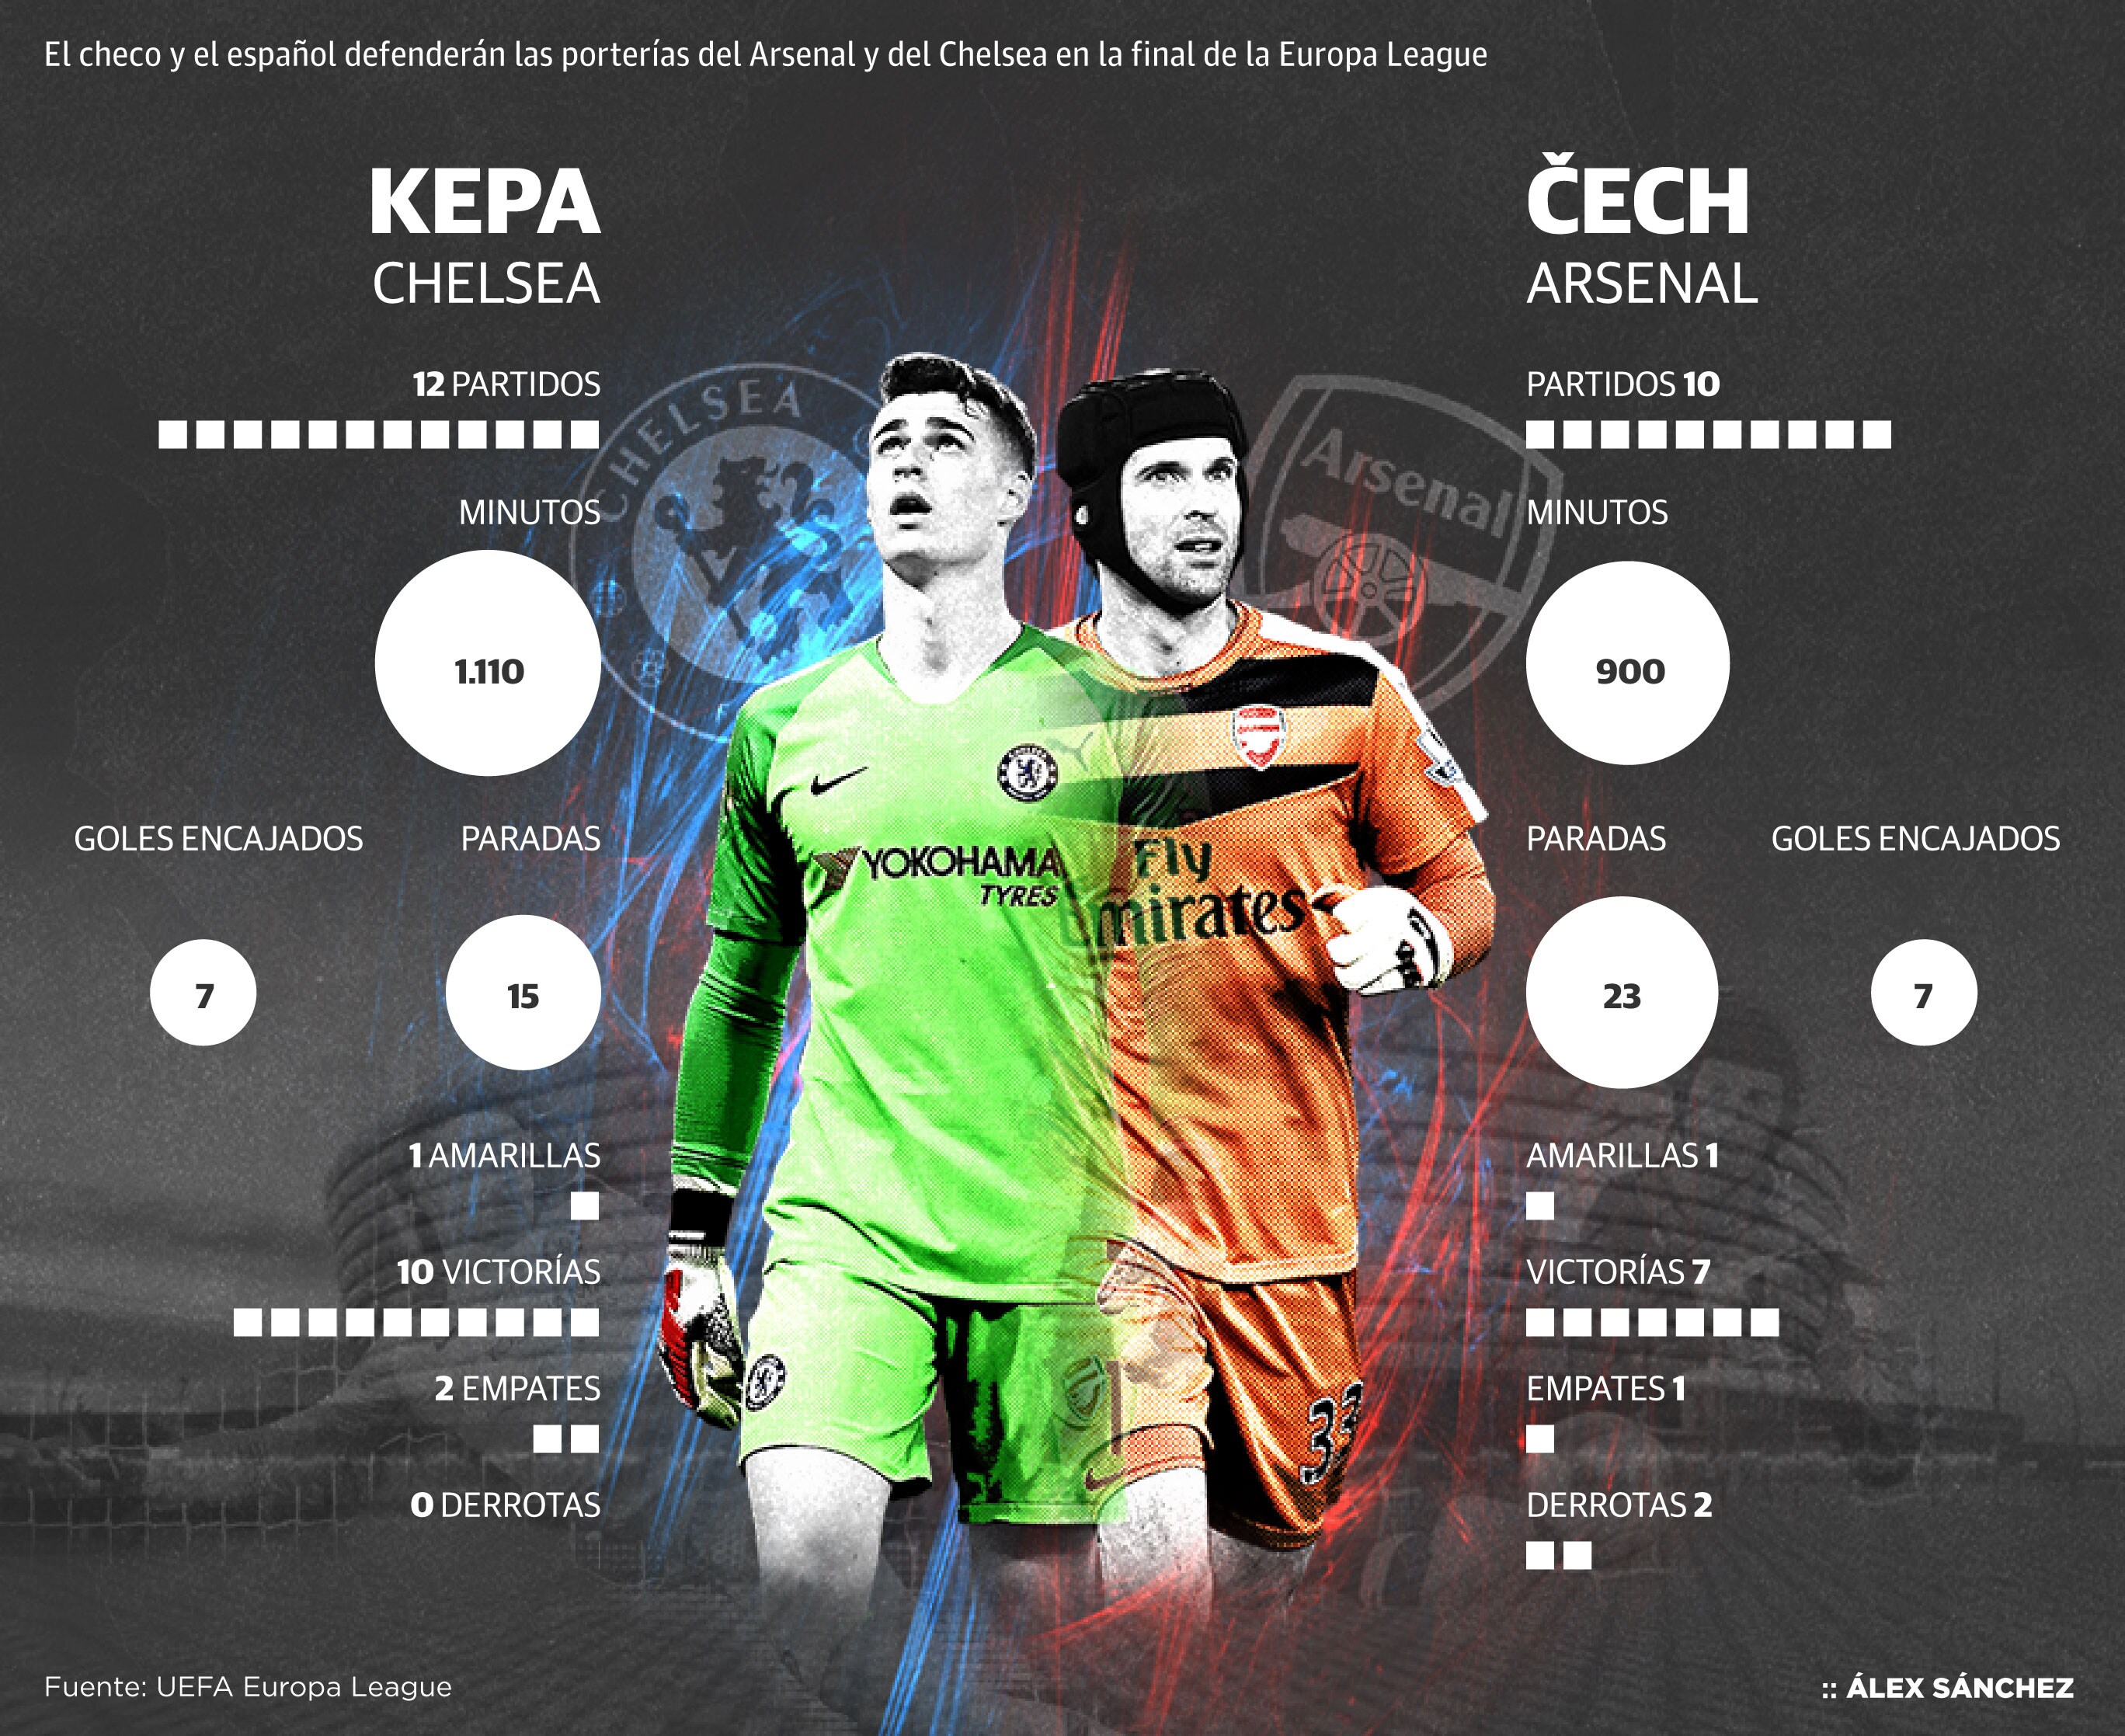 Cech-Kepa, duelo entre leyenda y heredero